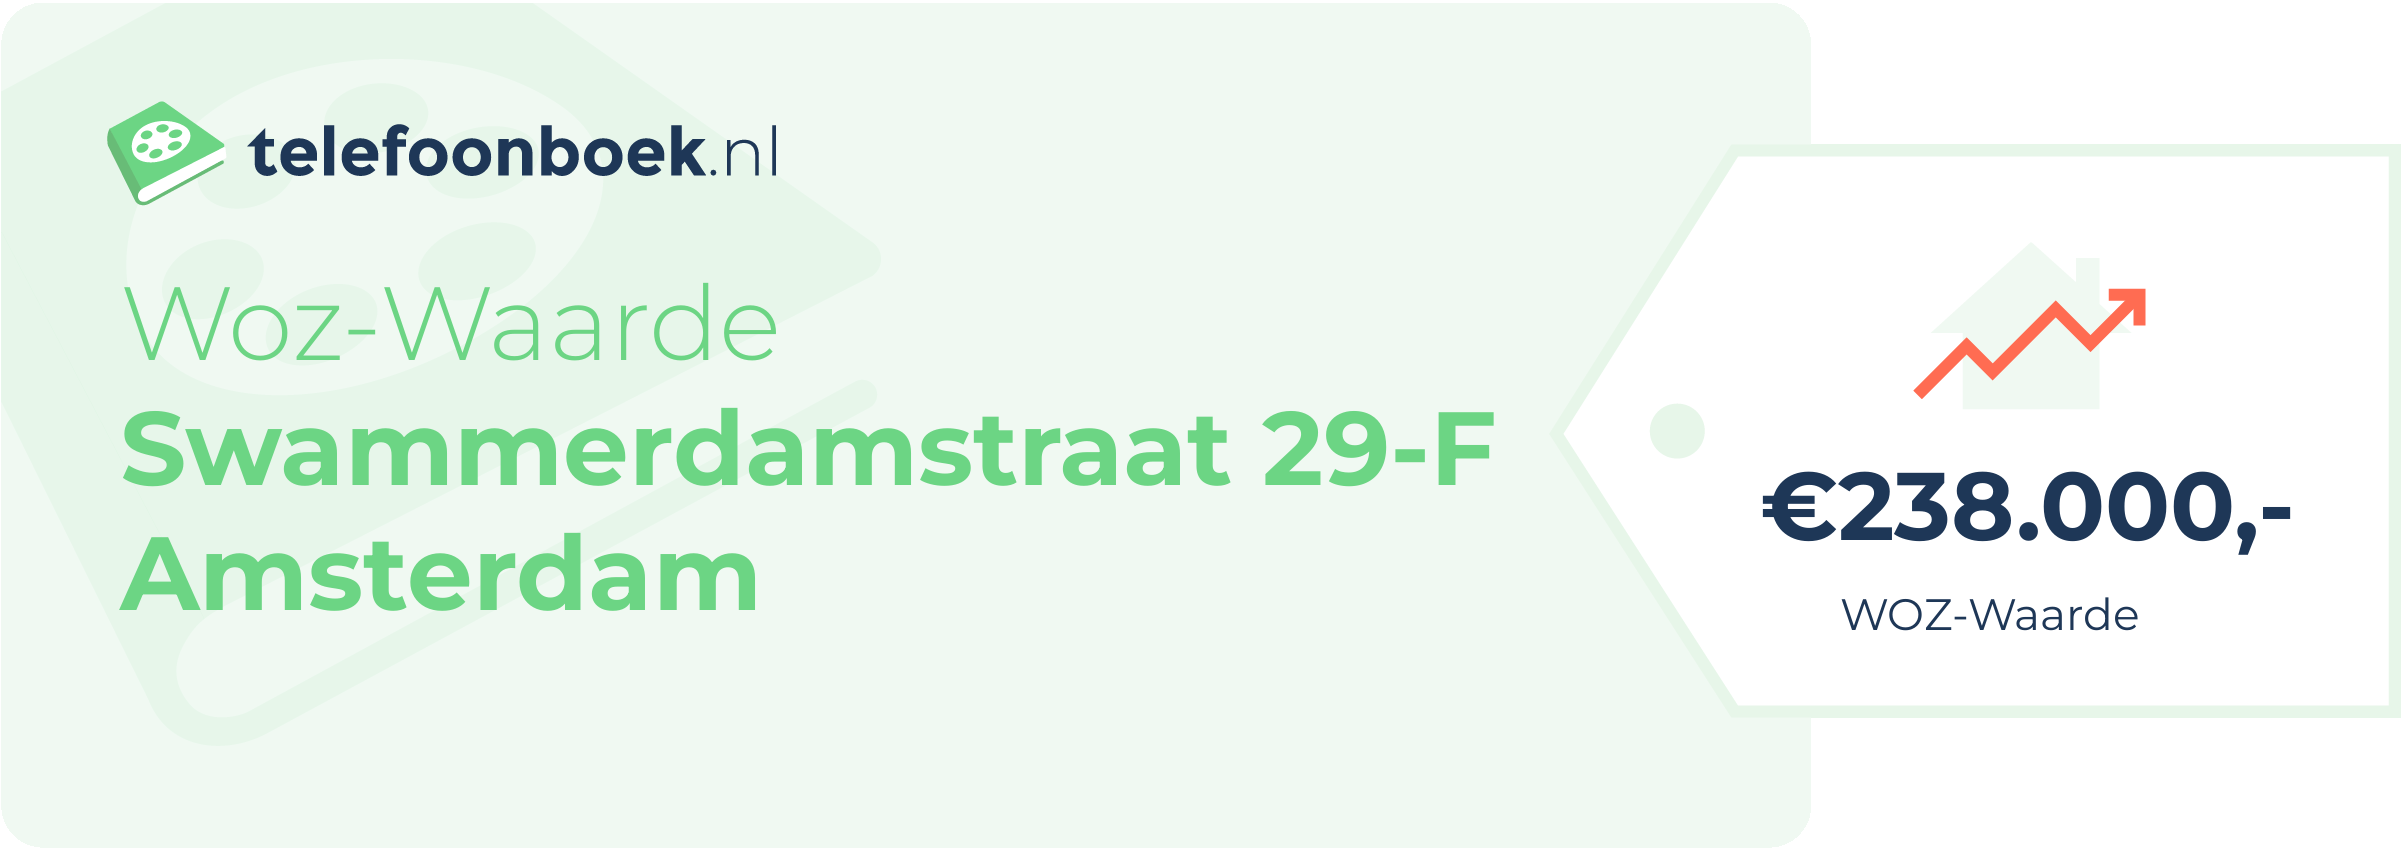 WOZ-waarde Swammerdamstraat 29-F Amsterdam